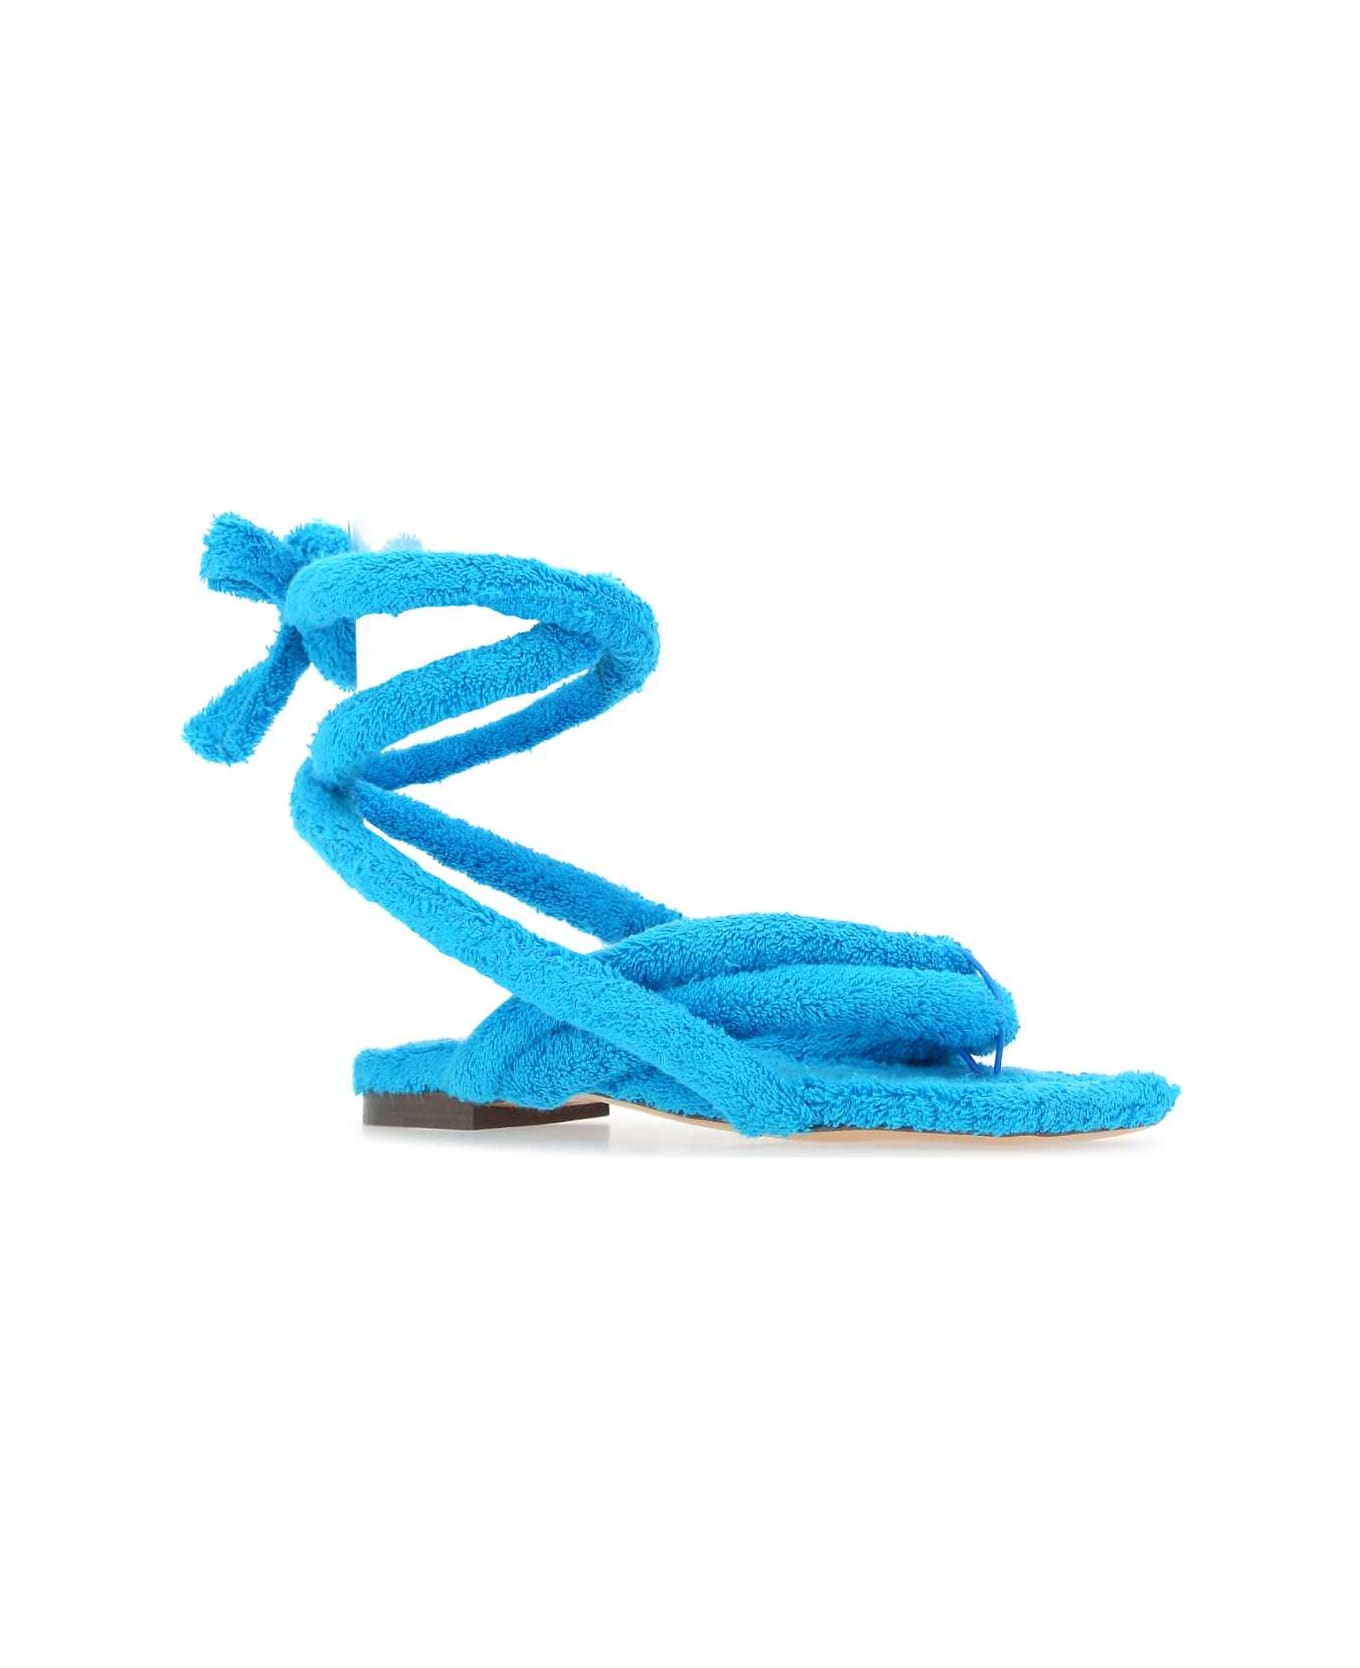 Sebastian Milano Turquoise Sponge Sandals - SKYBLUE